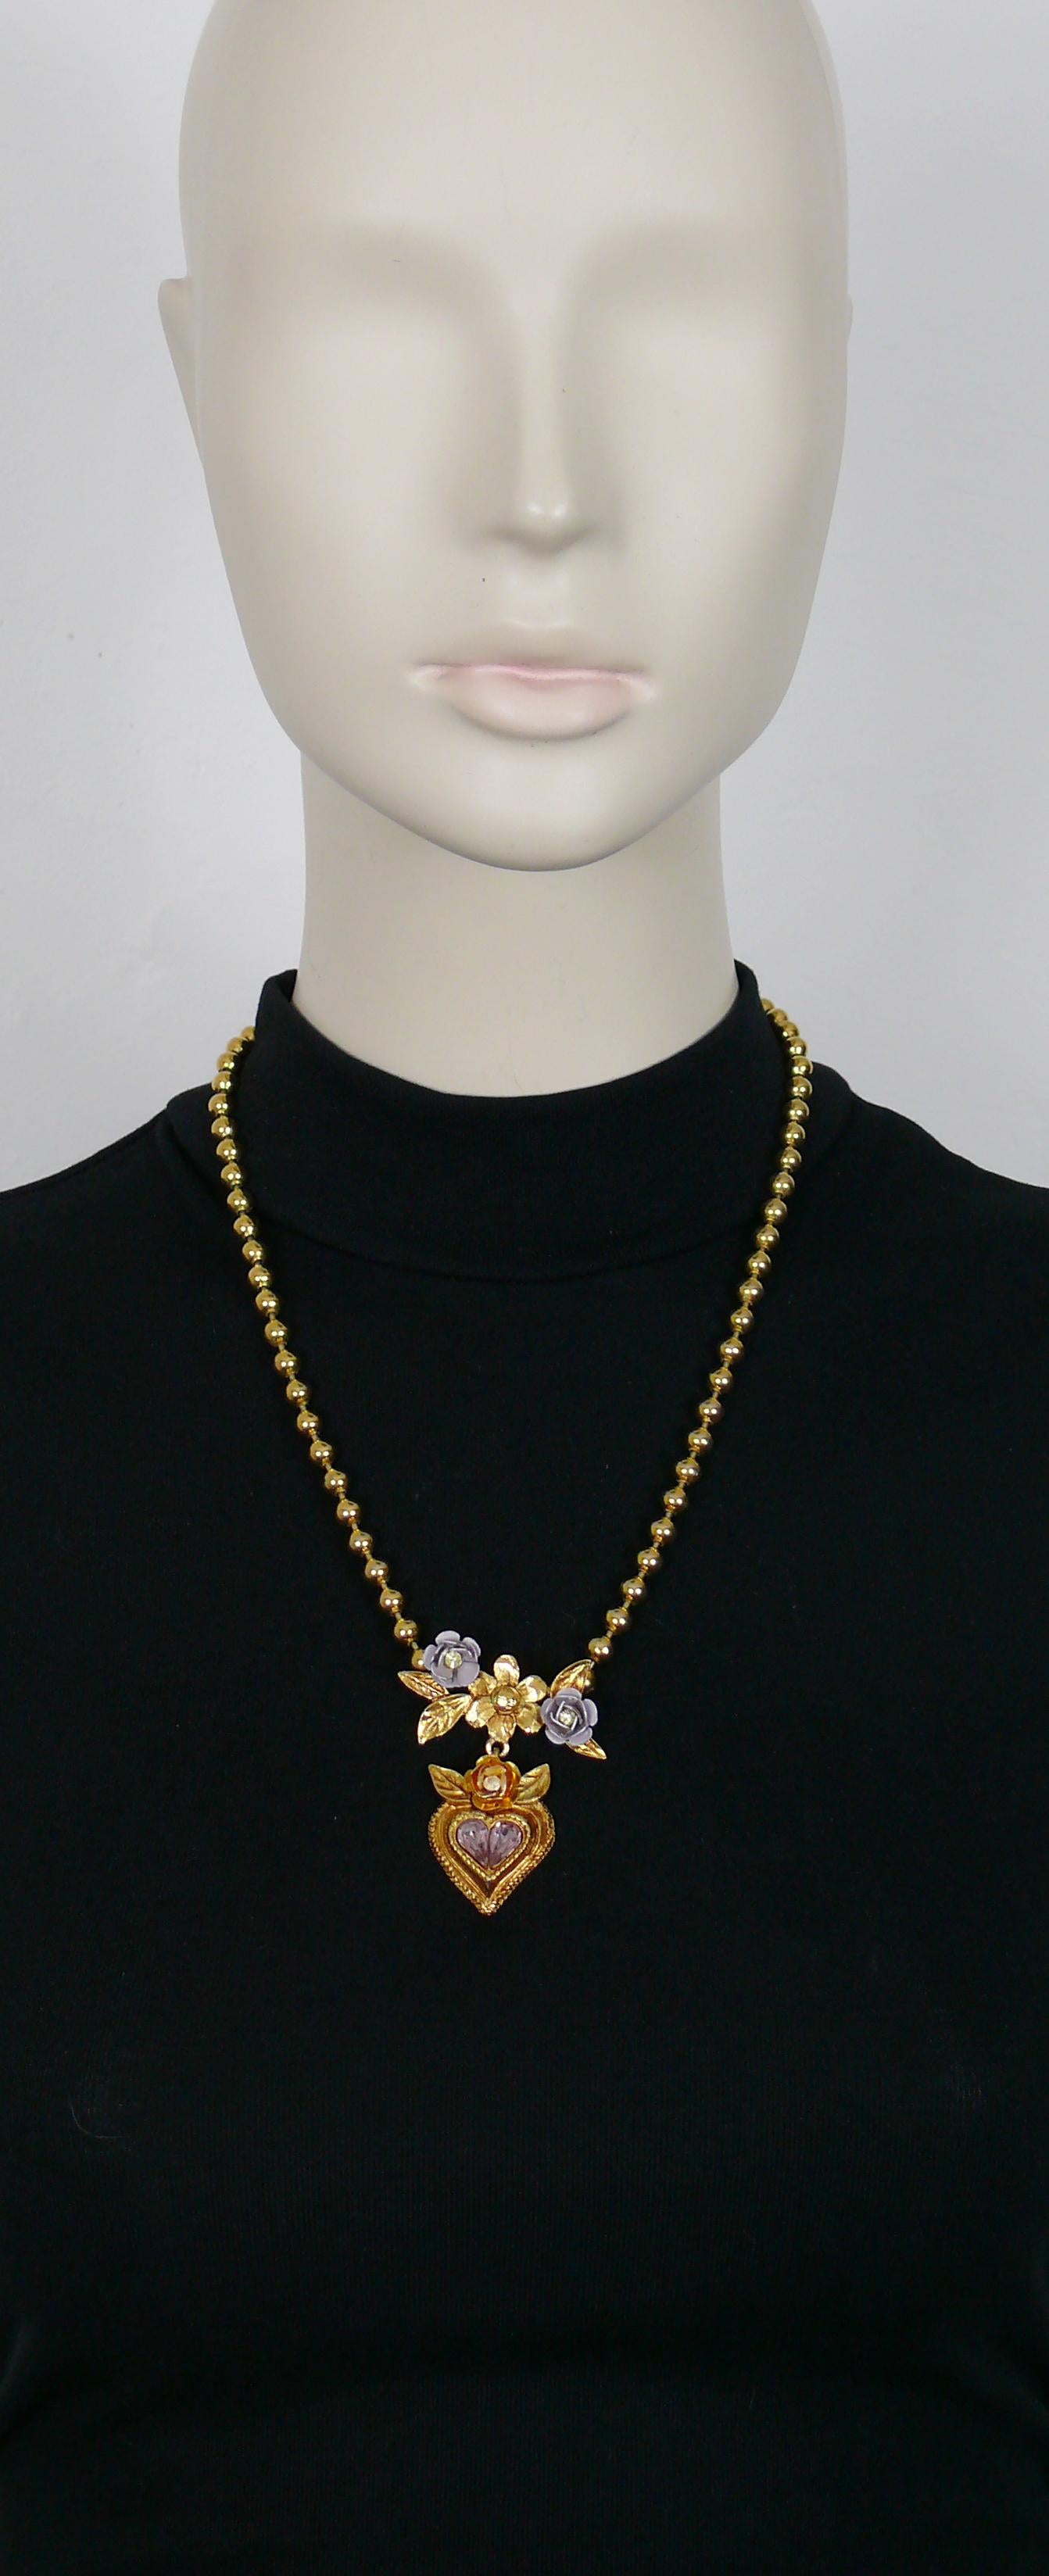 CHRISTIAN LACROIX Halskette mit goldfarbener Kugelkette und einem Herzanhänger mit Blumen, die mit fliederfarbenen und hellgelben Kristallen verziert sind.

Häkchenverschluss.

Gezeichnet CHRISTIAN LACROIX CL Made in France.

Ungefähre Maße: